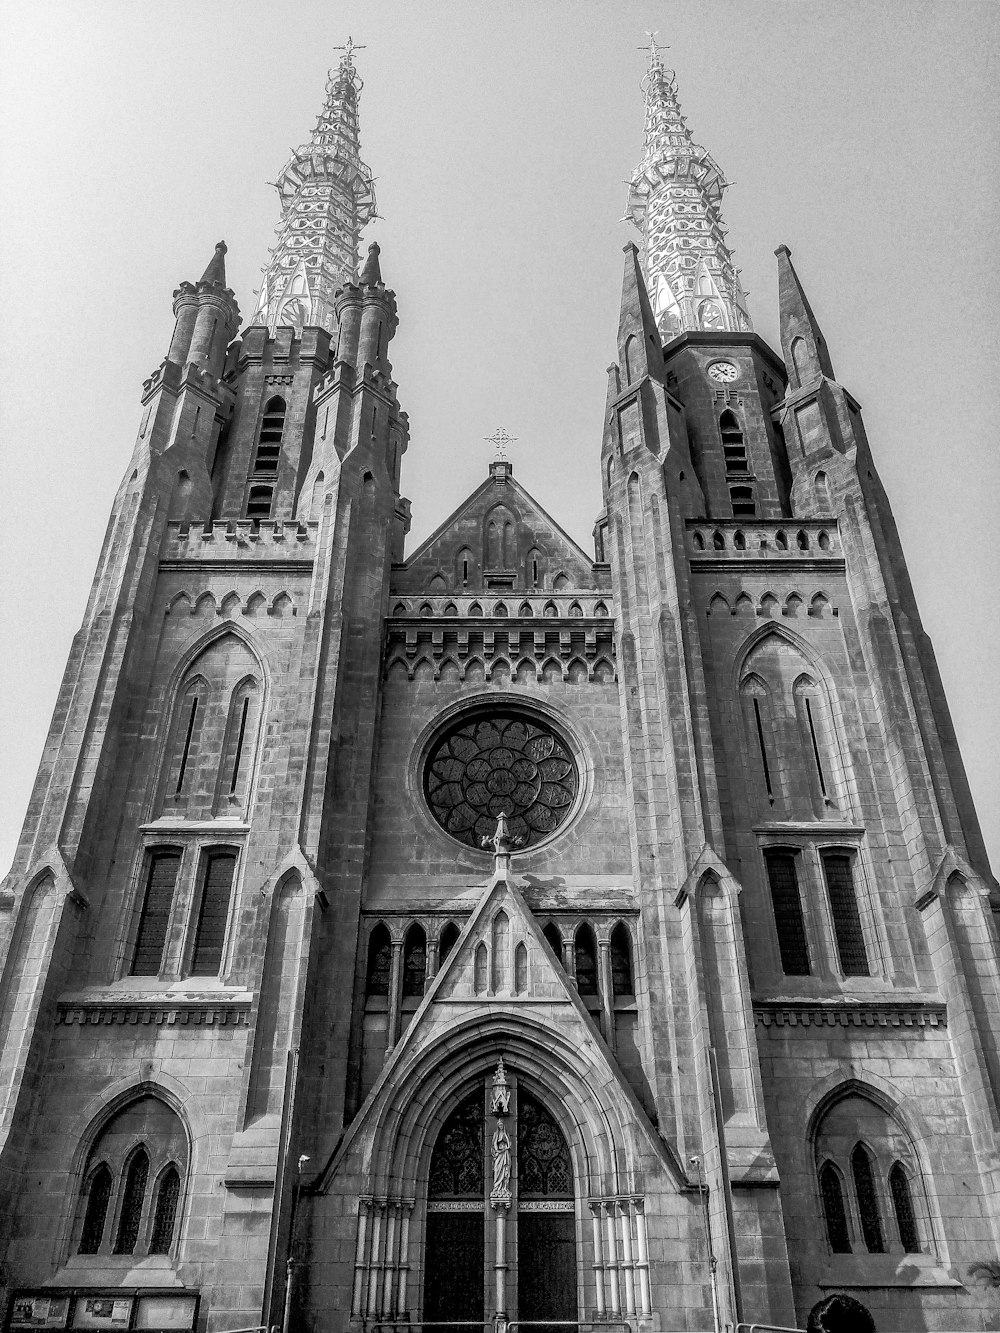 fotografia in scala di grigi della cattedrale